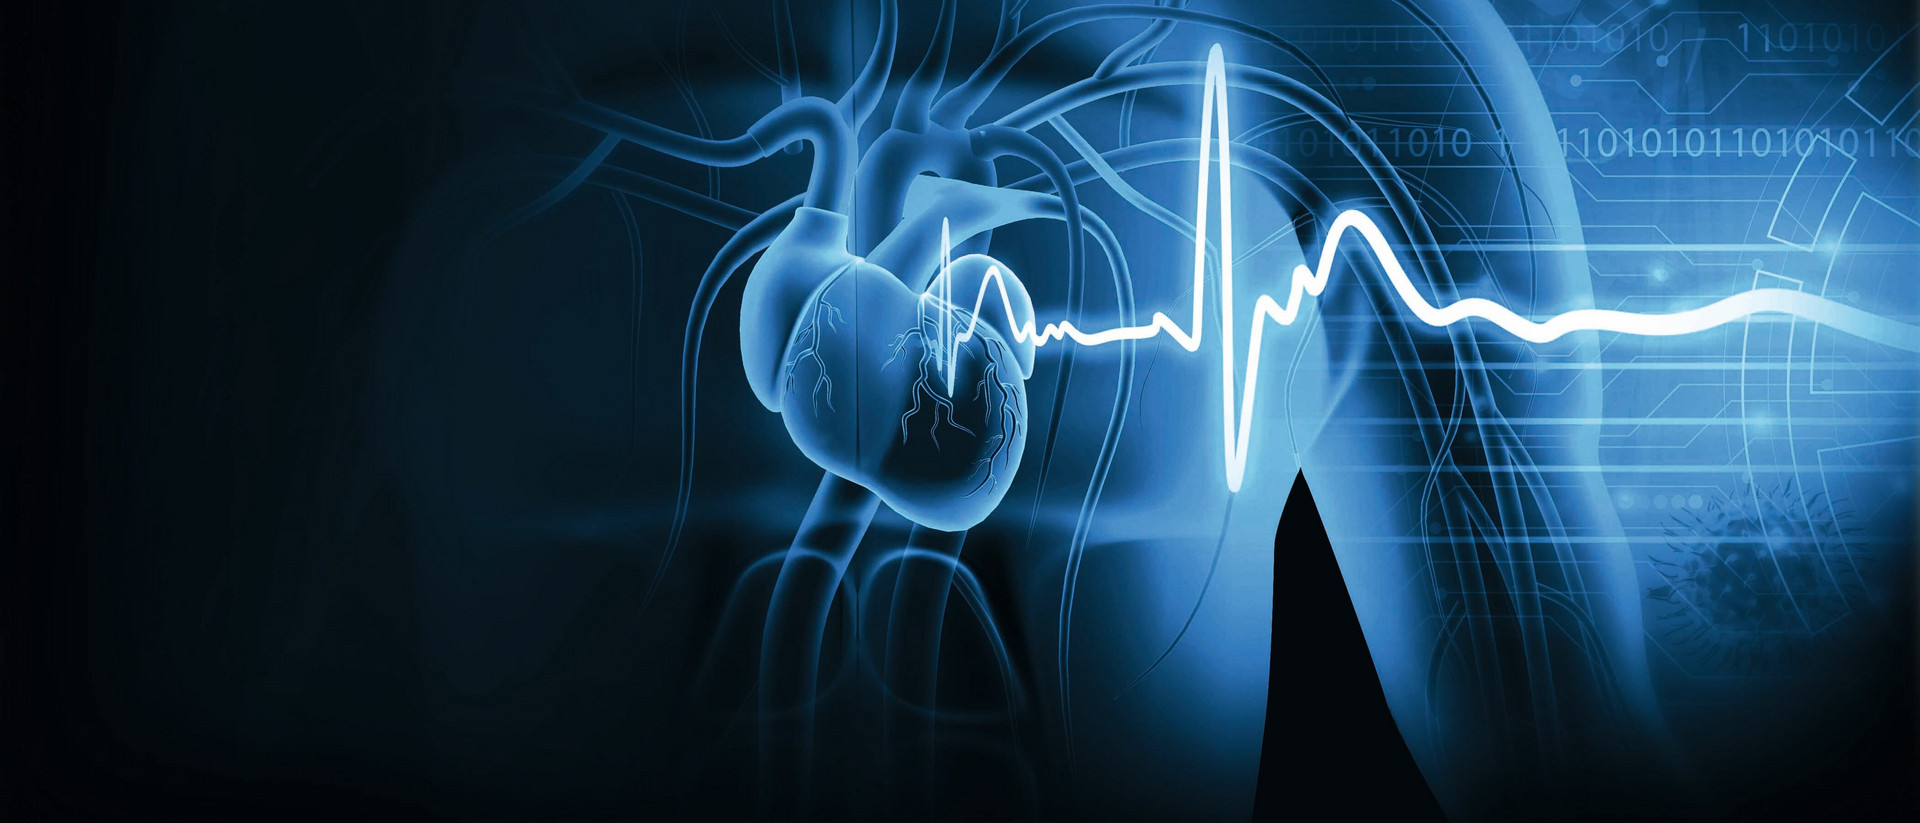 Zu sehen ist ein grafisch dargestellter Oberkörper, die inneren Organe erscheinen nur angedeutet. Eine Art Herzschlagkurve zieht sich in das Bild. 